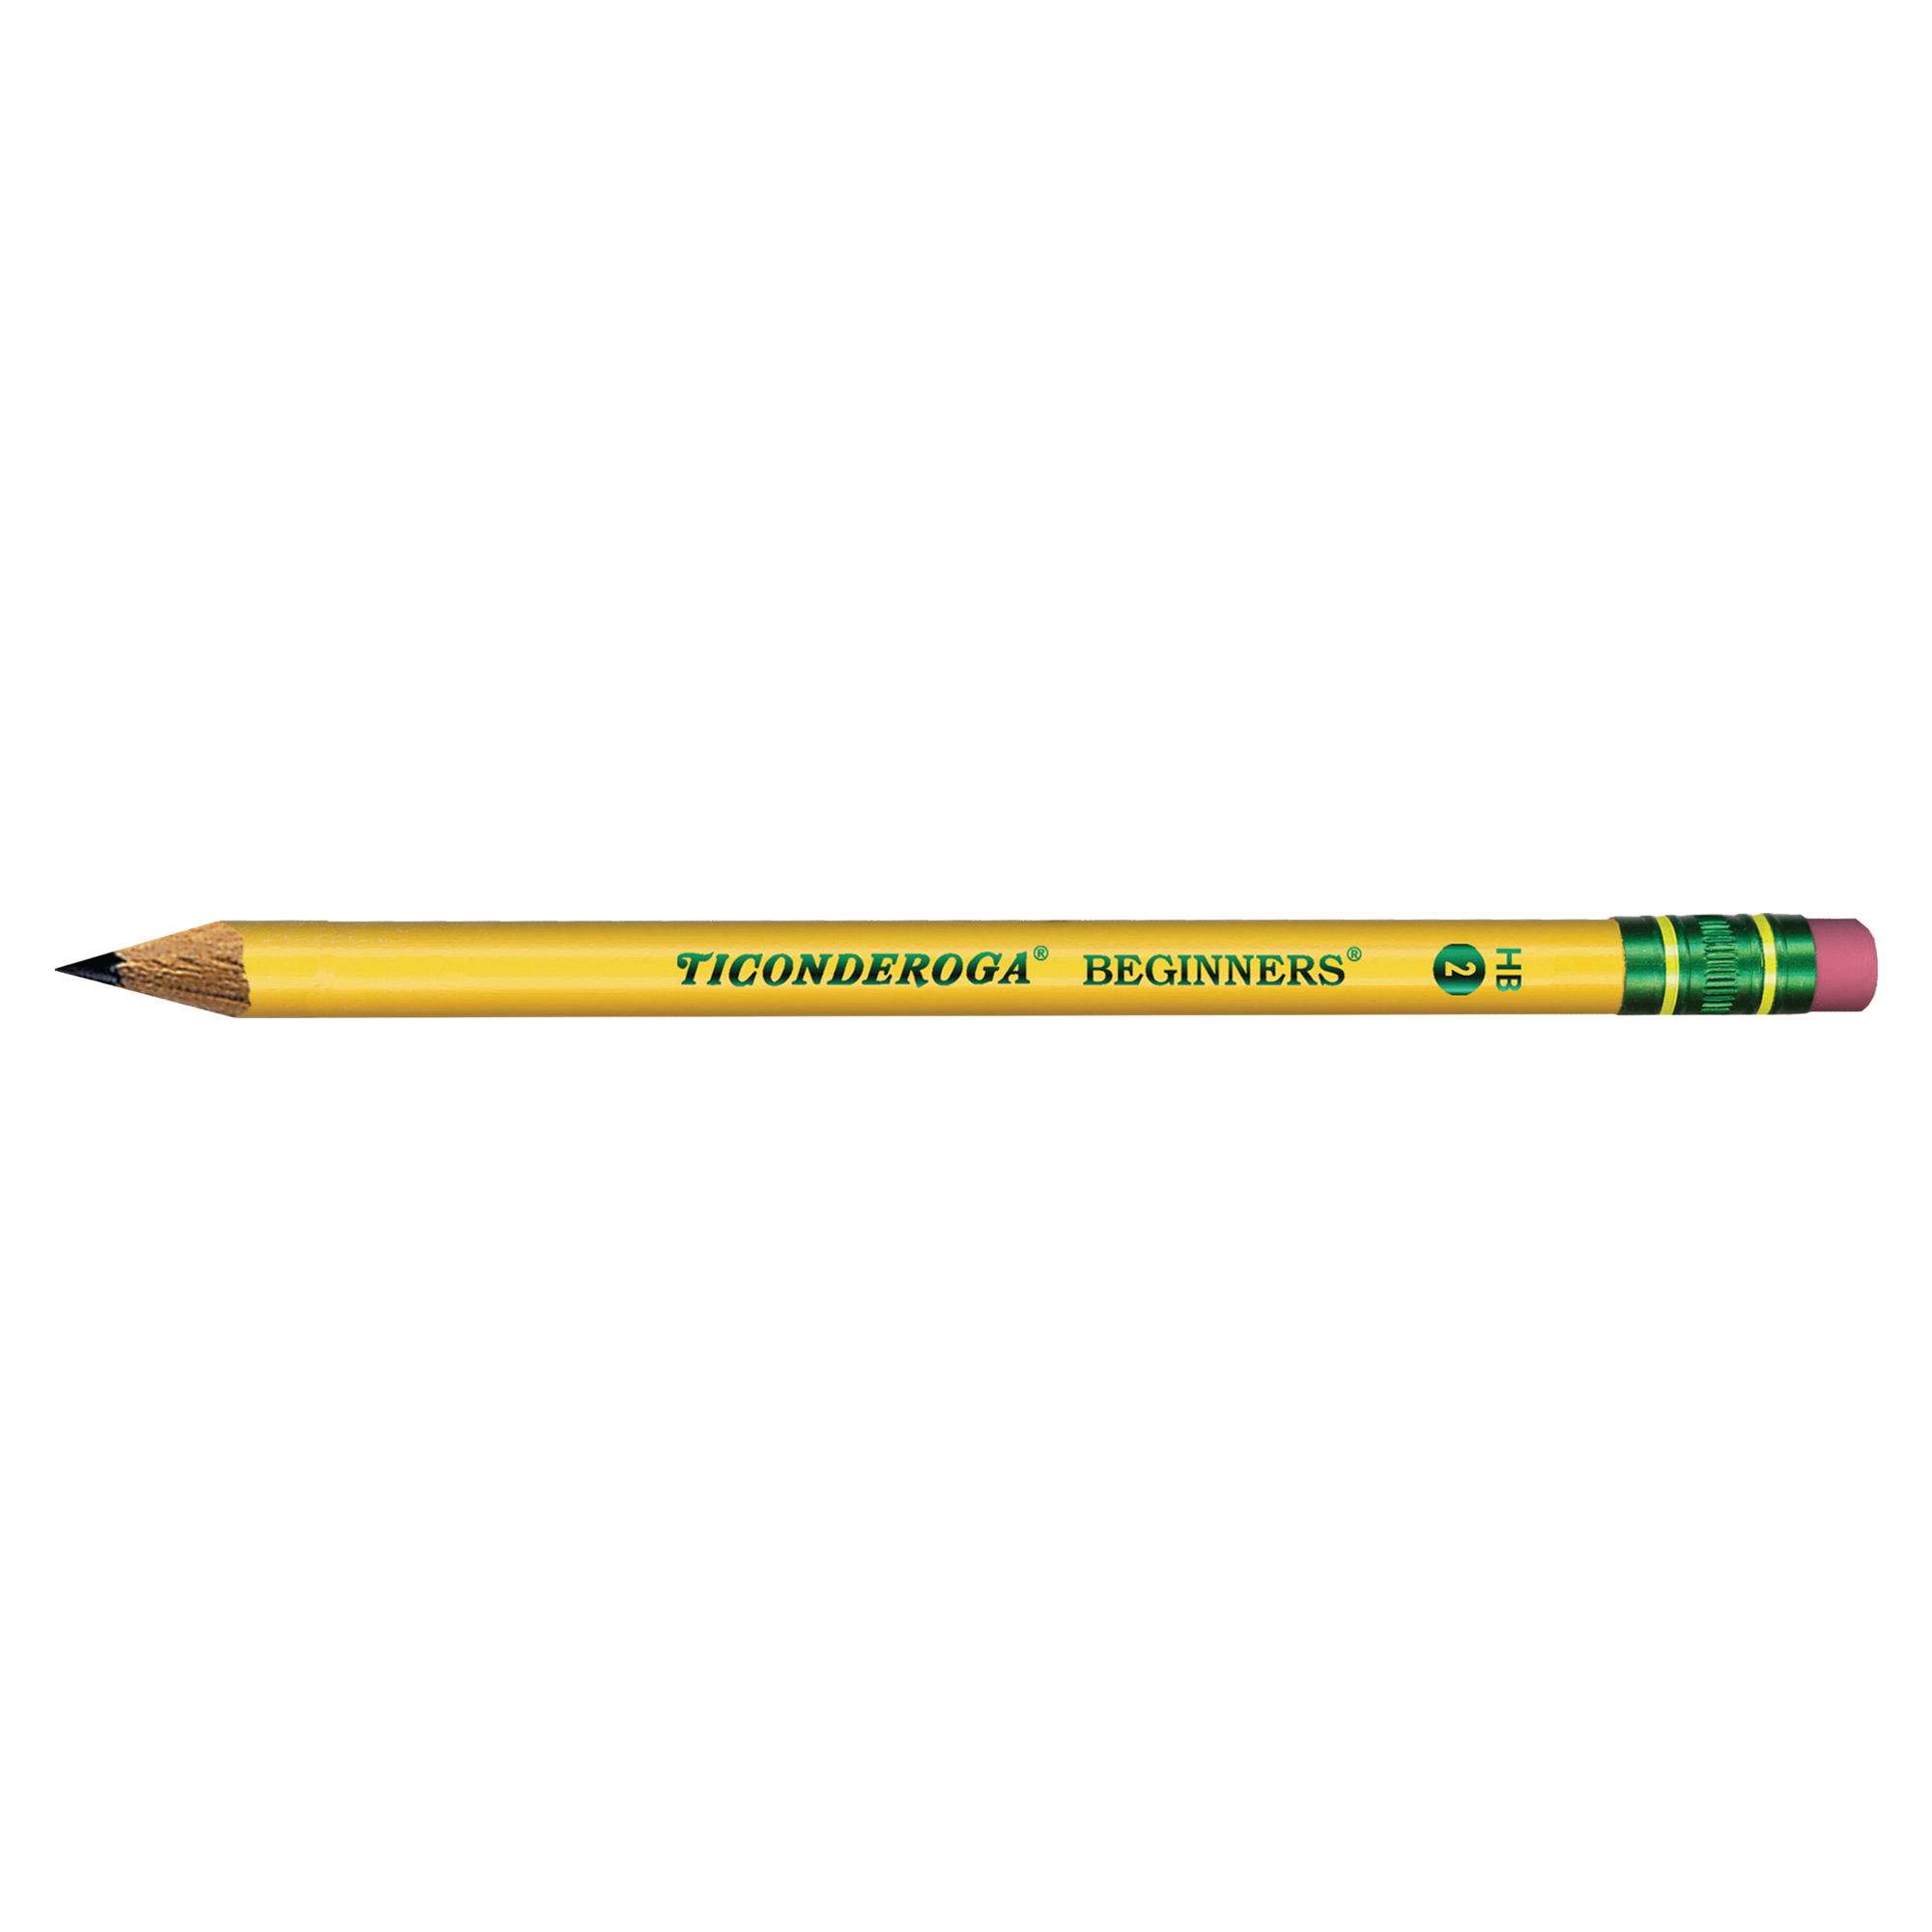 Dixon Ticonderoga My First Pencils 6 Pencils #2 HB 33306 Latex Free Eraser